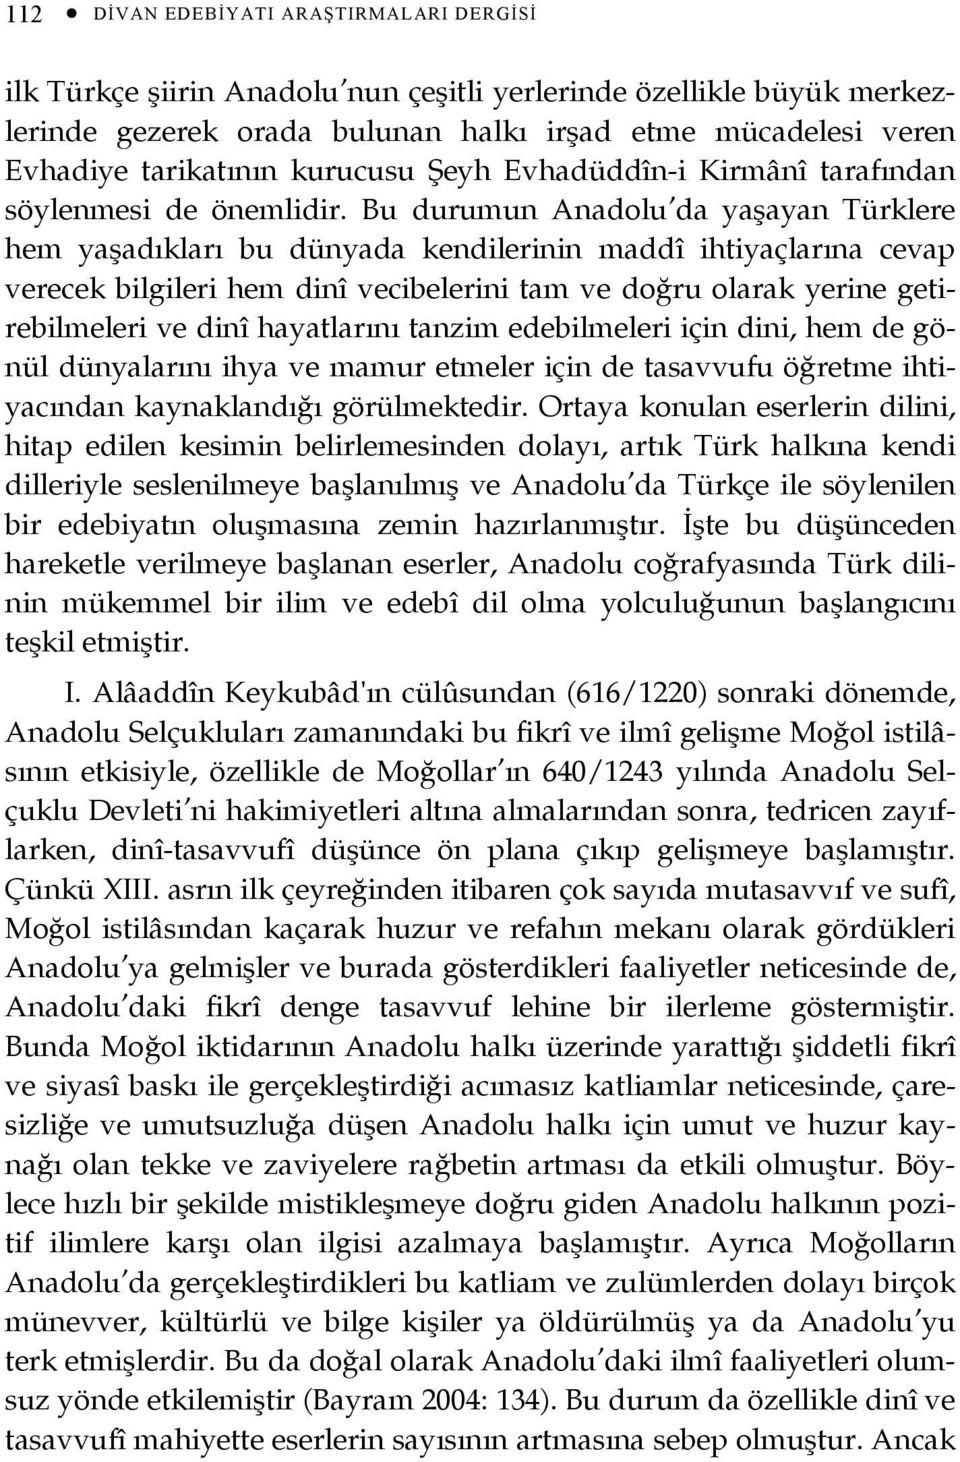 Bu durumun Anadolu da yaşayan Türklere hem yaşadıkları bu dünyada kendilerinin maddî ihtiyaçlarına cevap verecek bilgileri hem dinî vecibelerini tam ve doğru olarak yerine getirebilmeleri ve dinî